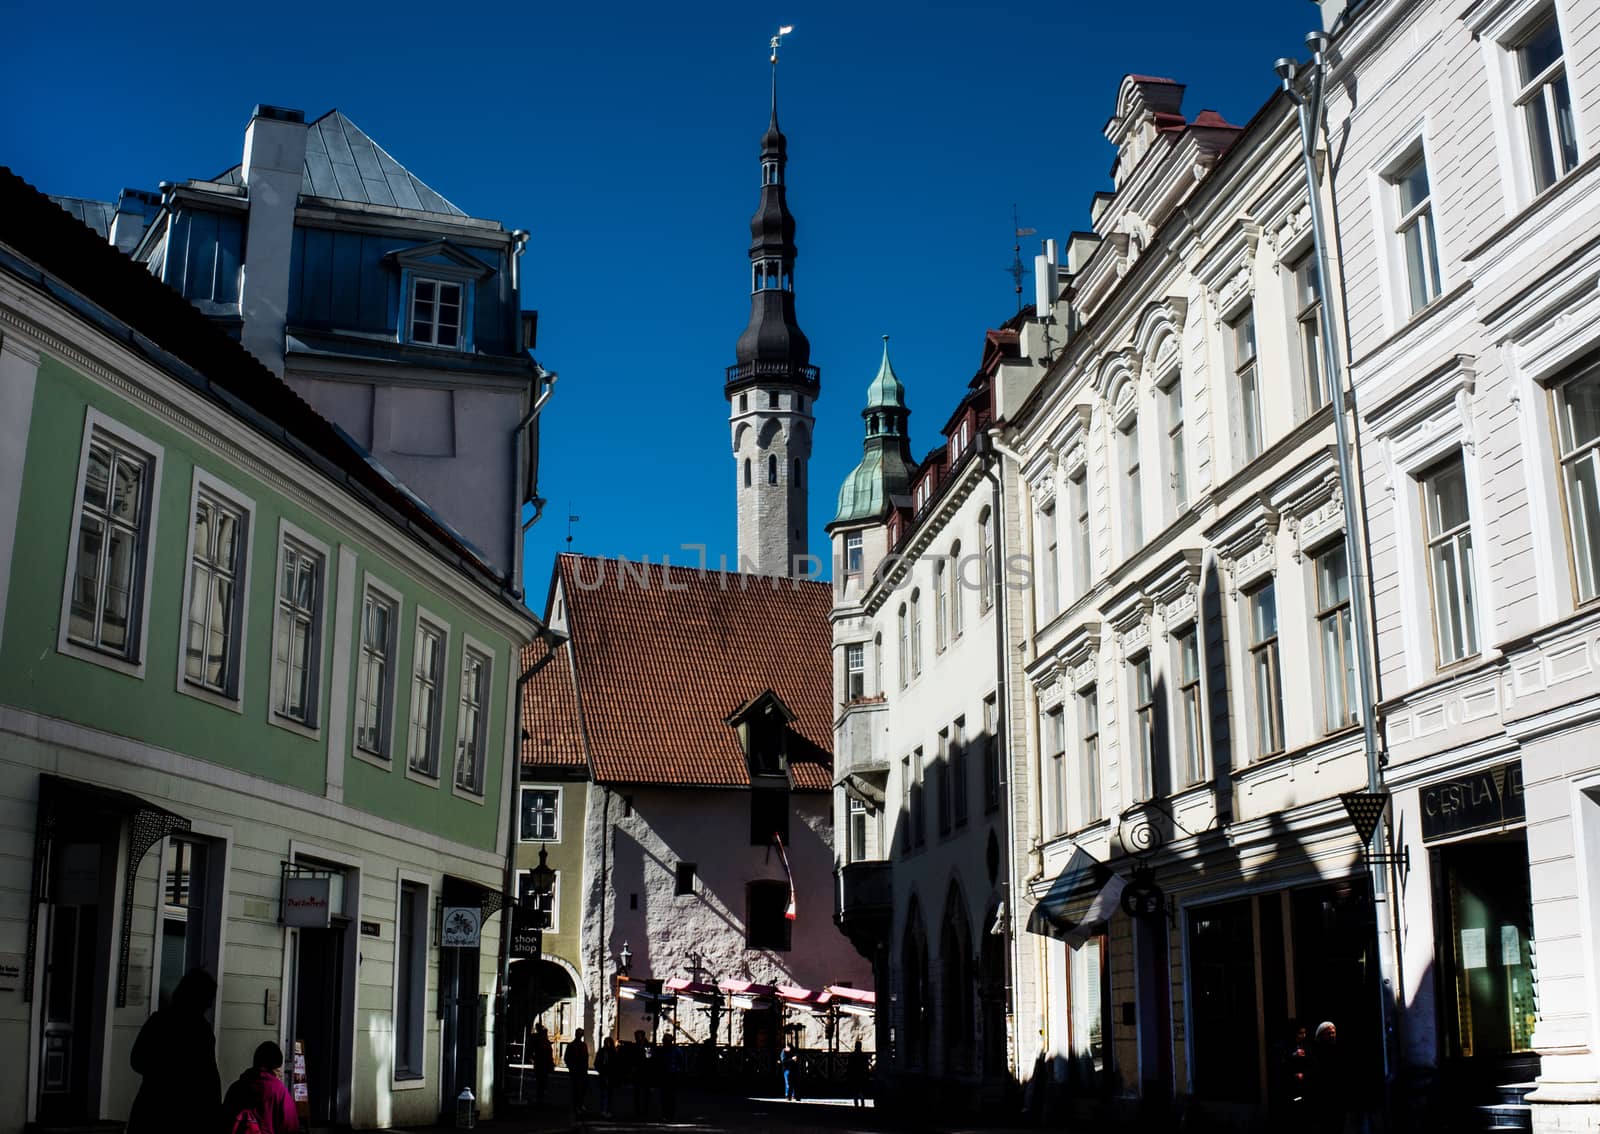 April 20, 2018, Tallinn, Estonia. Street of the old town in Tallinn.